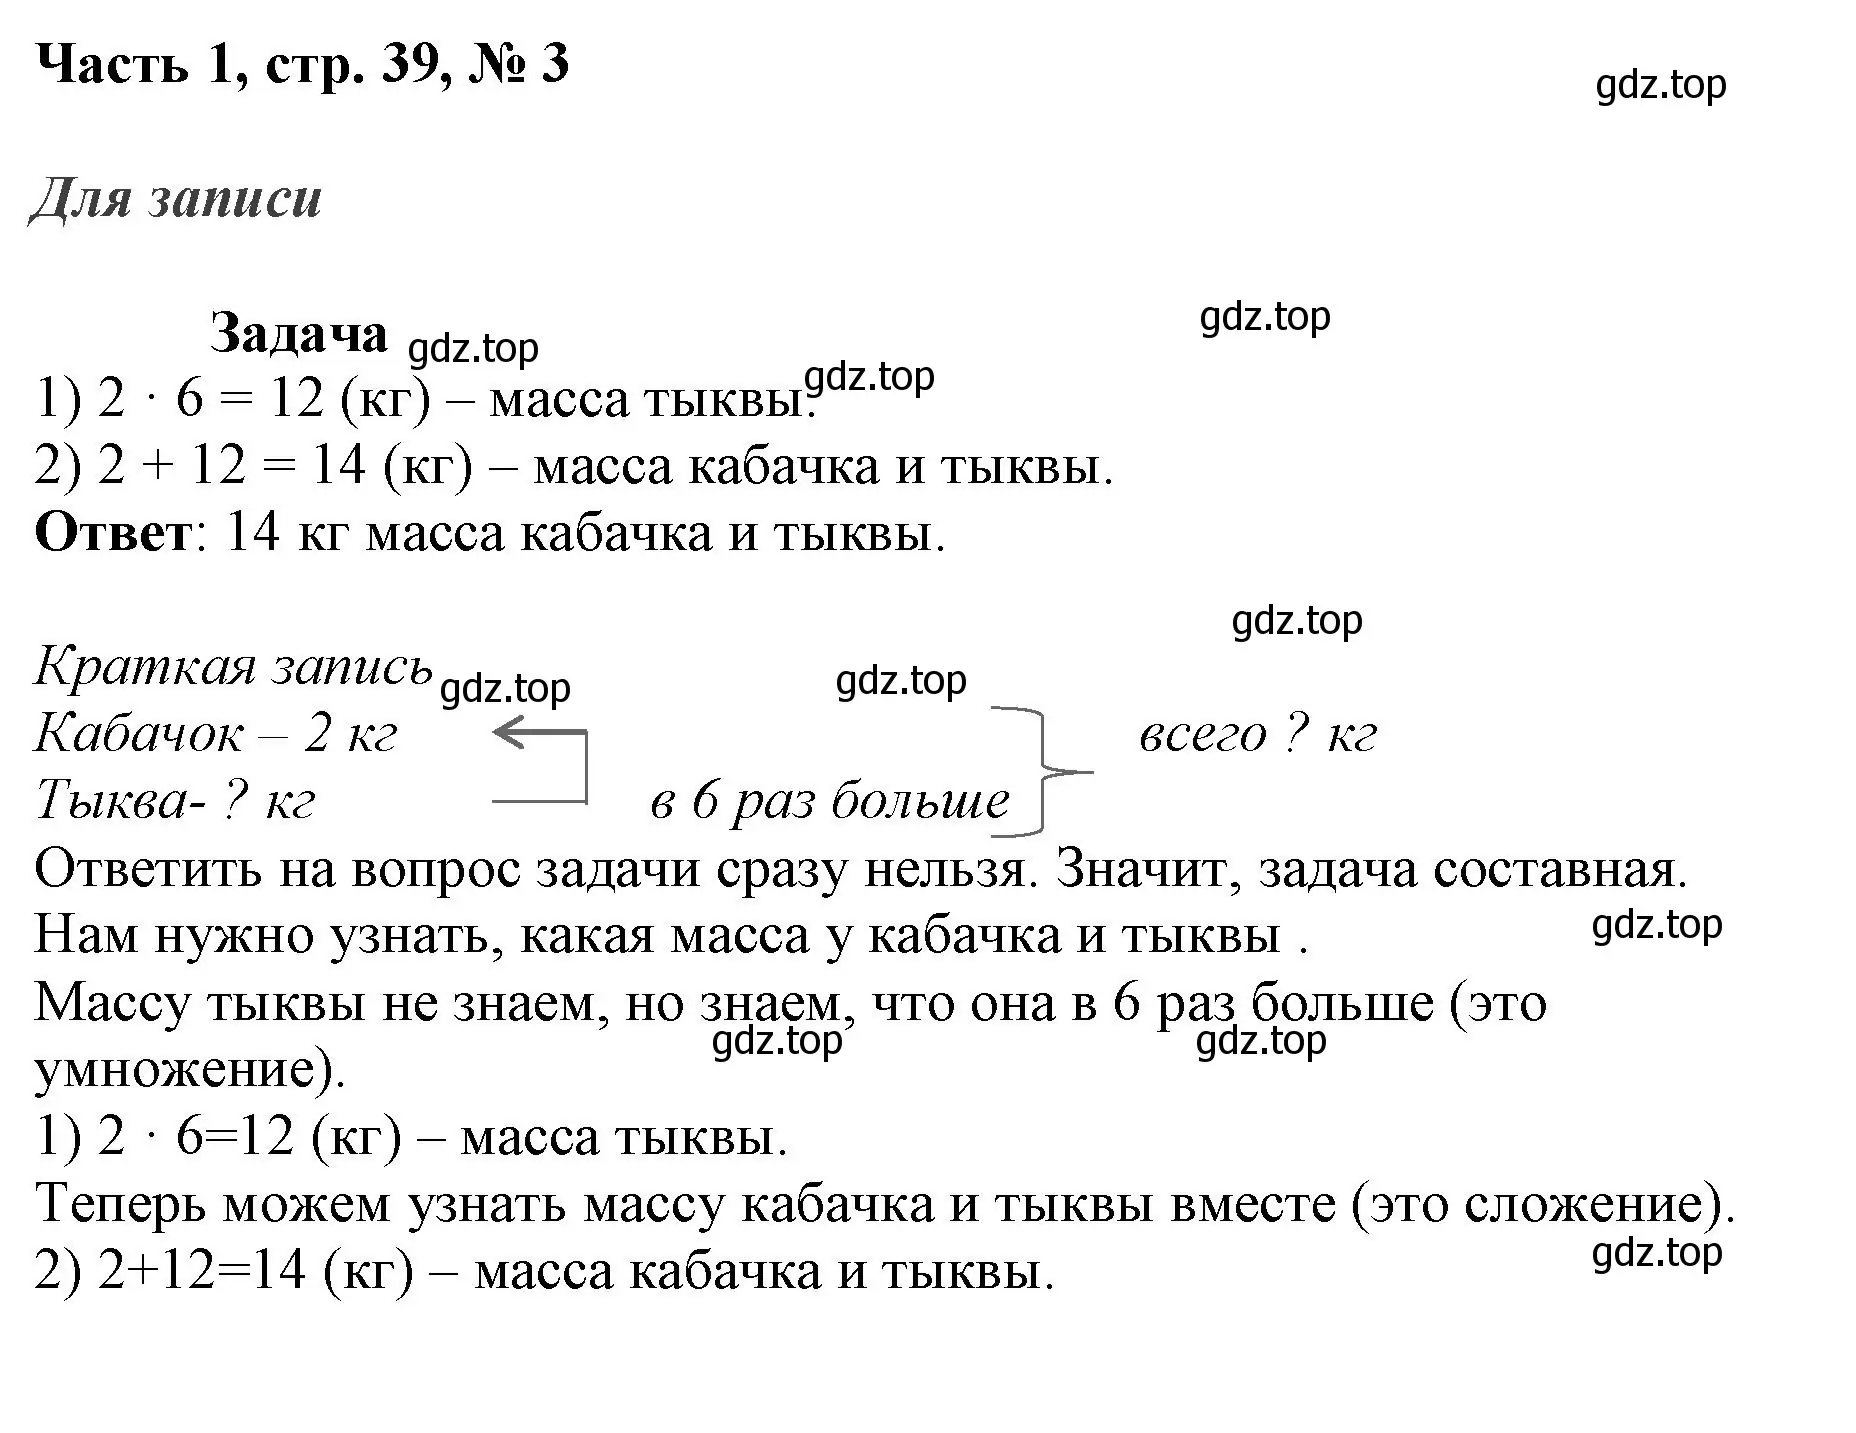 Решение номер 3 (страница 39) гдз по математике 3 класс Моро, Бантова, учебник 1 часть